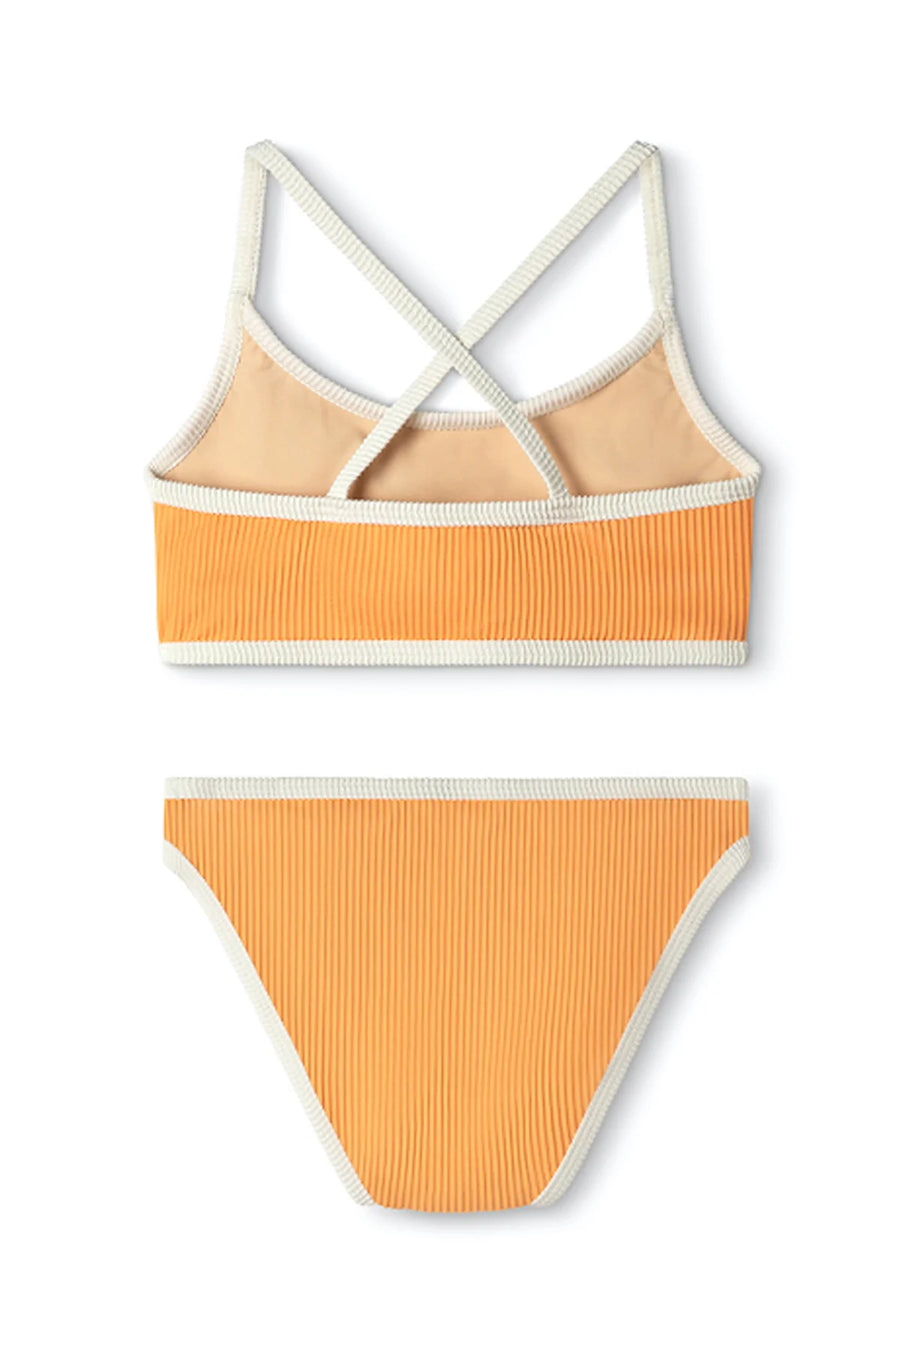 READ DESCRIPTION - Mini Rib Cross Over Bikini | Tangerine